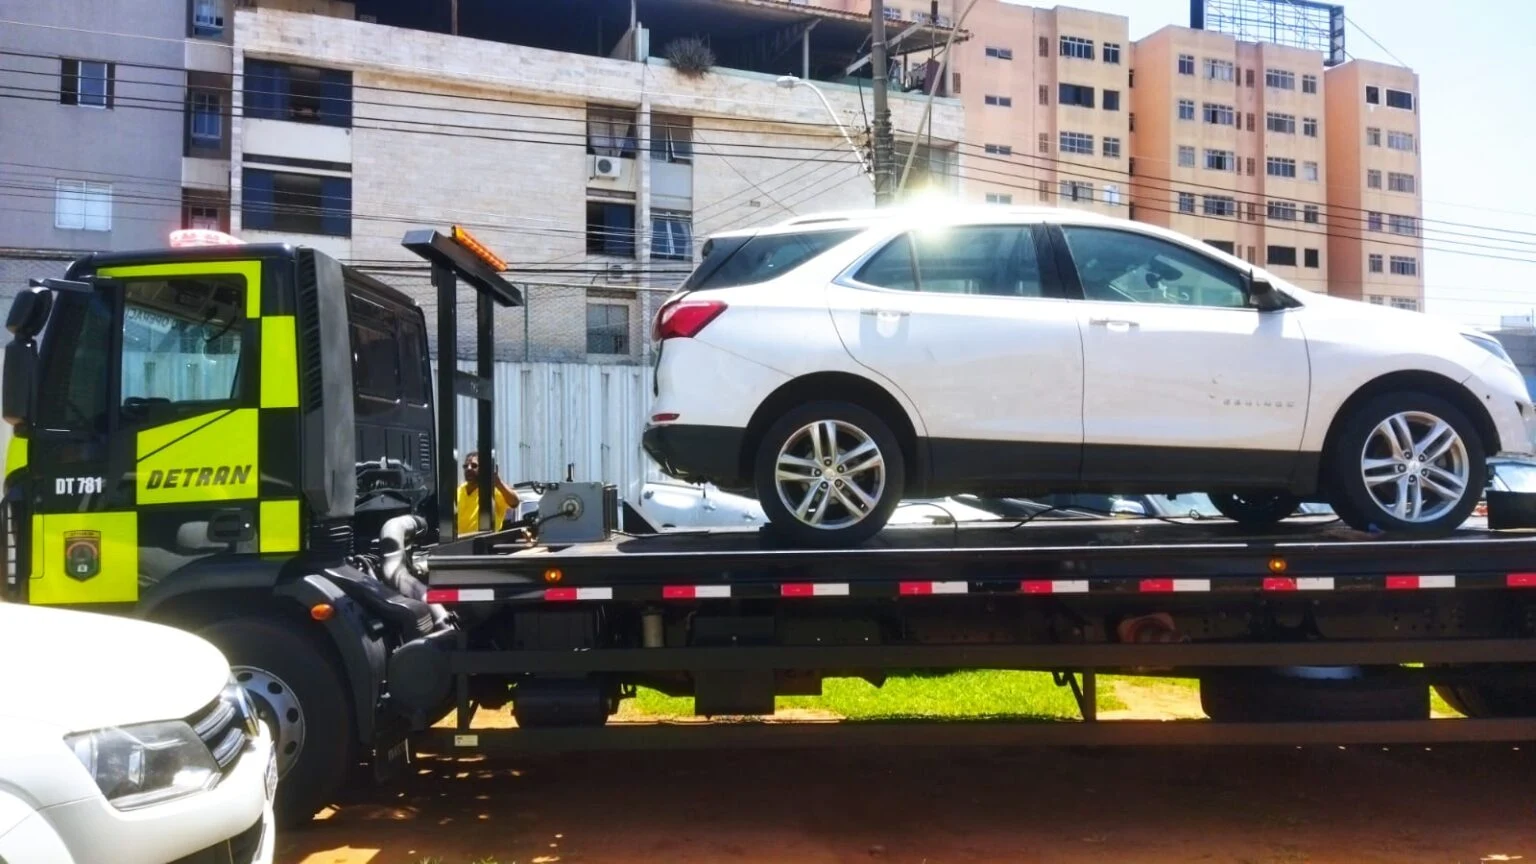 As equipes do DF Livre de Carcaças localizaram um veículo com ocorrência policial por apropriação indébita e restrição judicial | Foto: Divulgação/SSP-DF